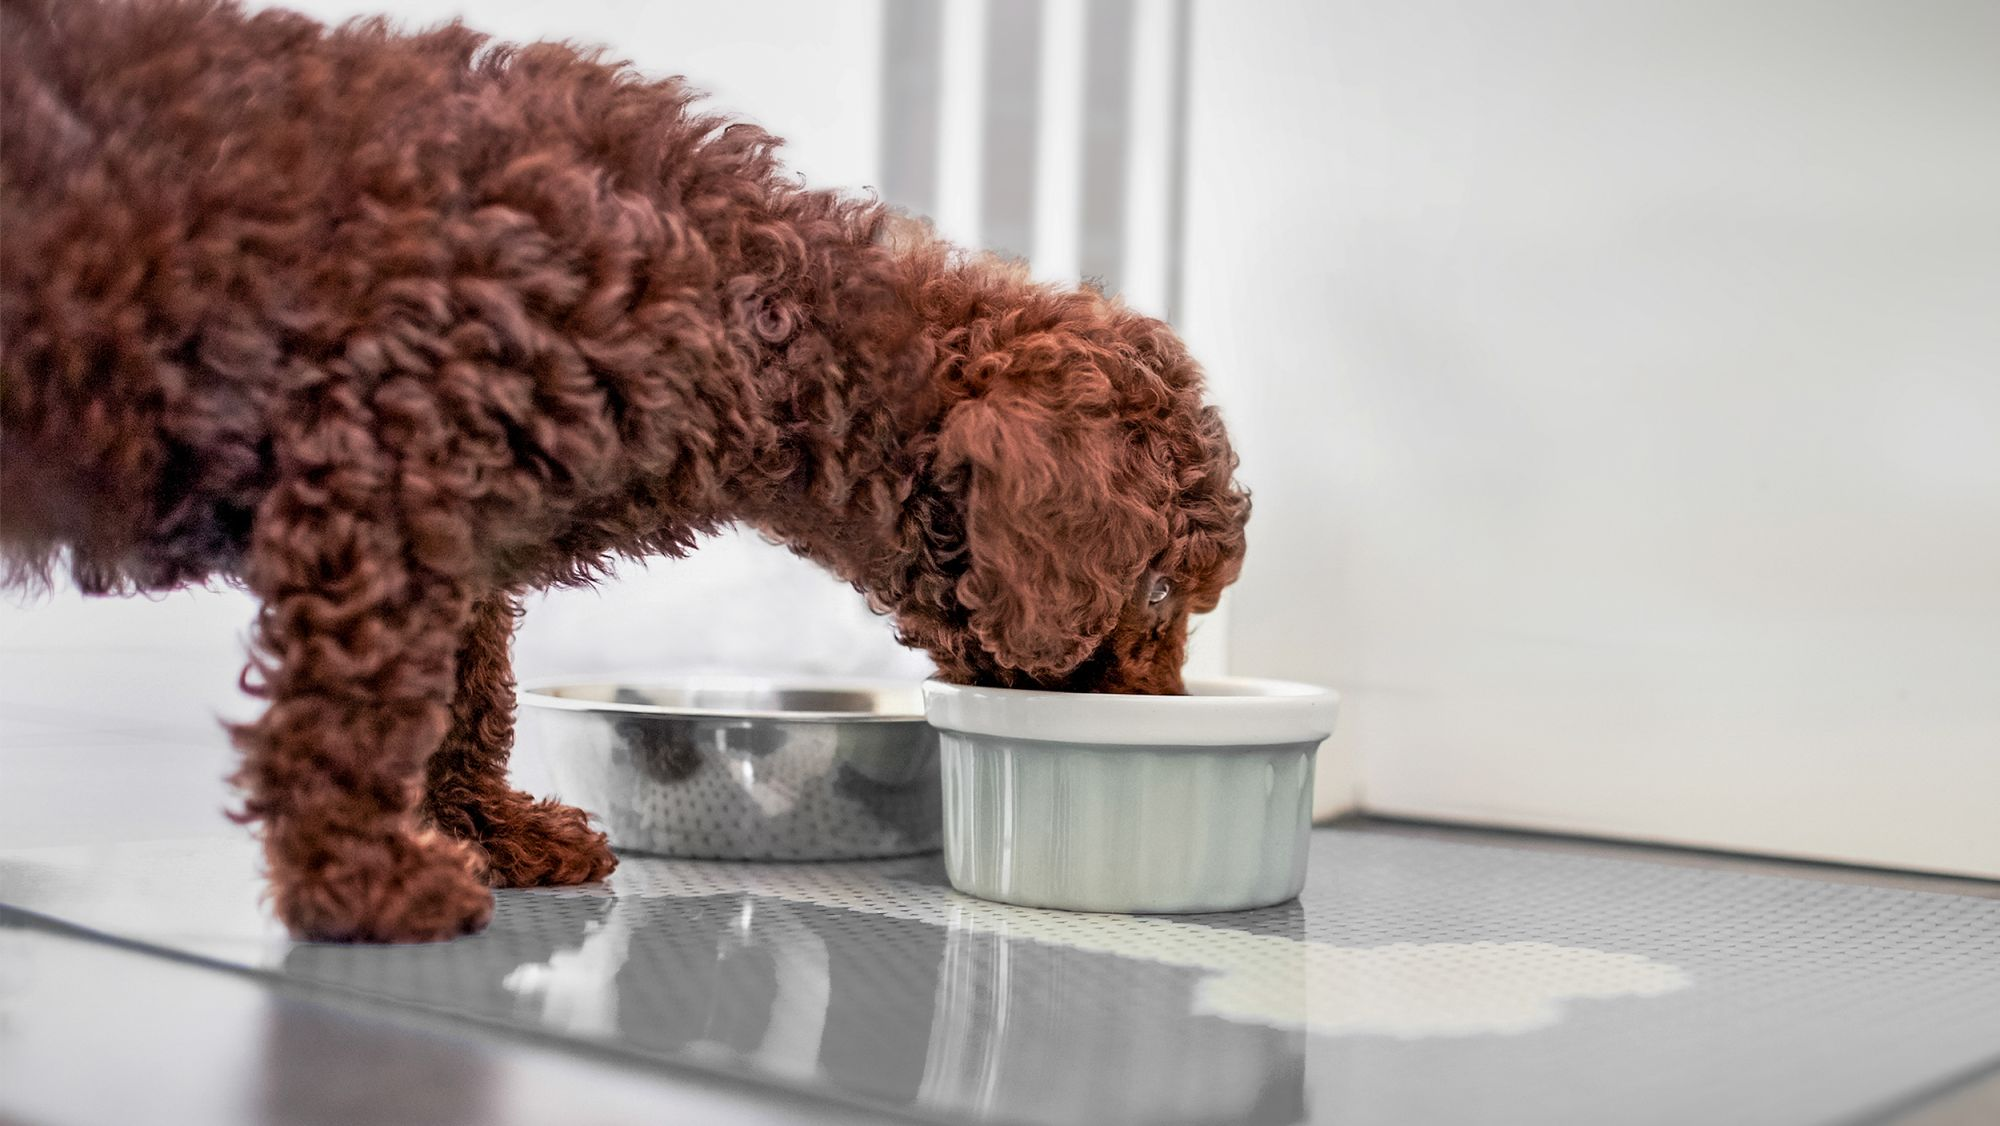 Puppy Poodle de pie en el interior comiendo de un cuenco de cerámica.